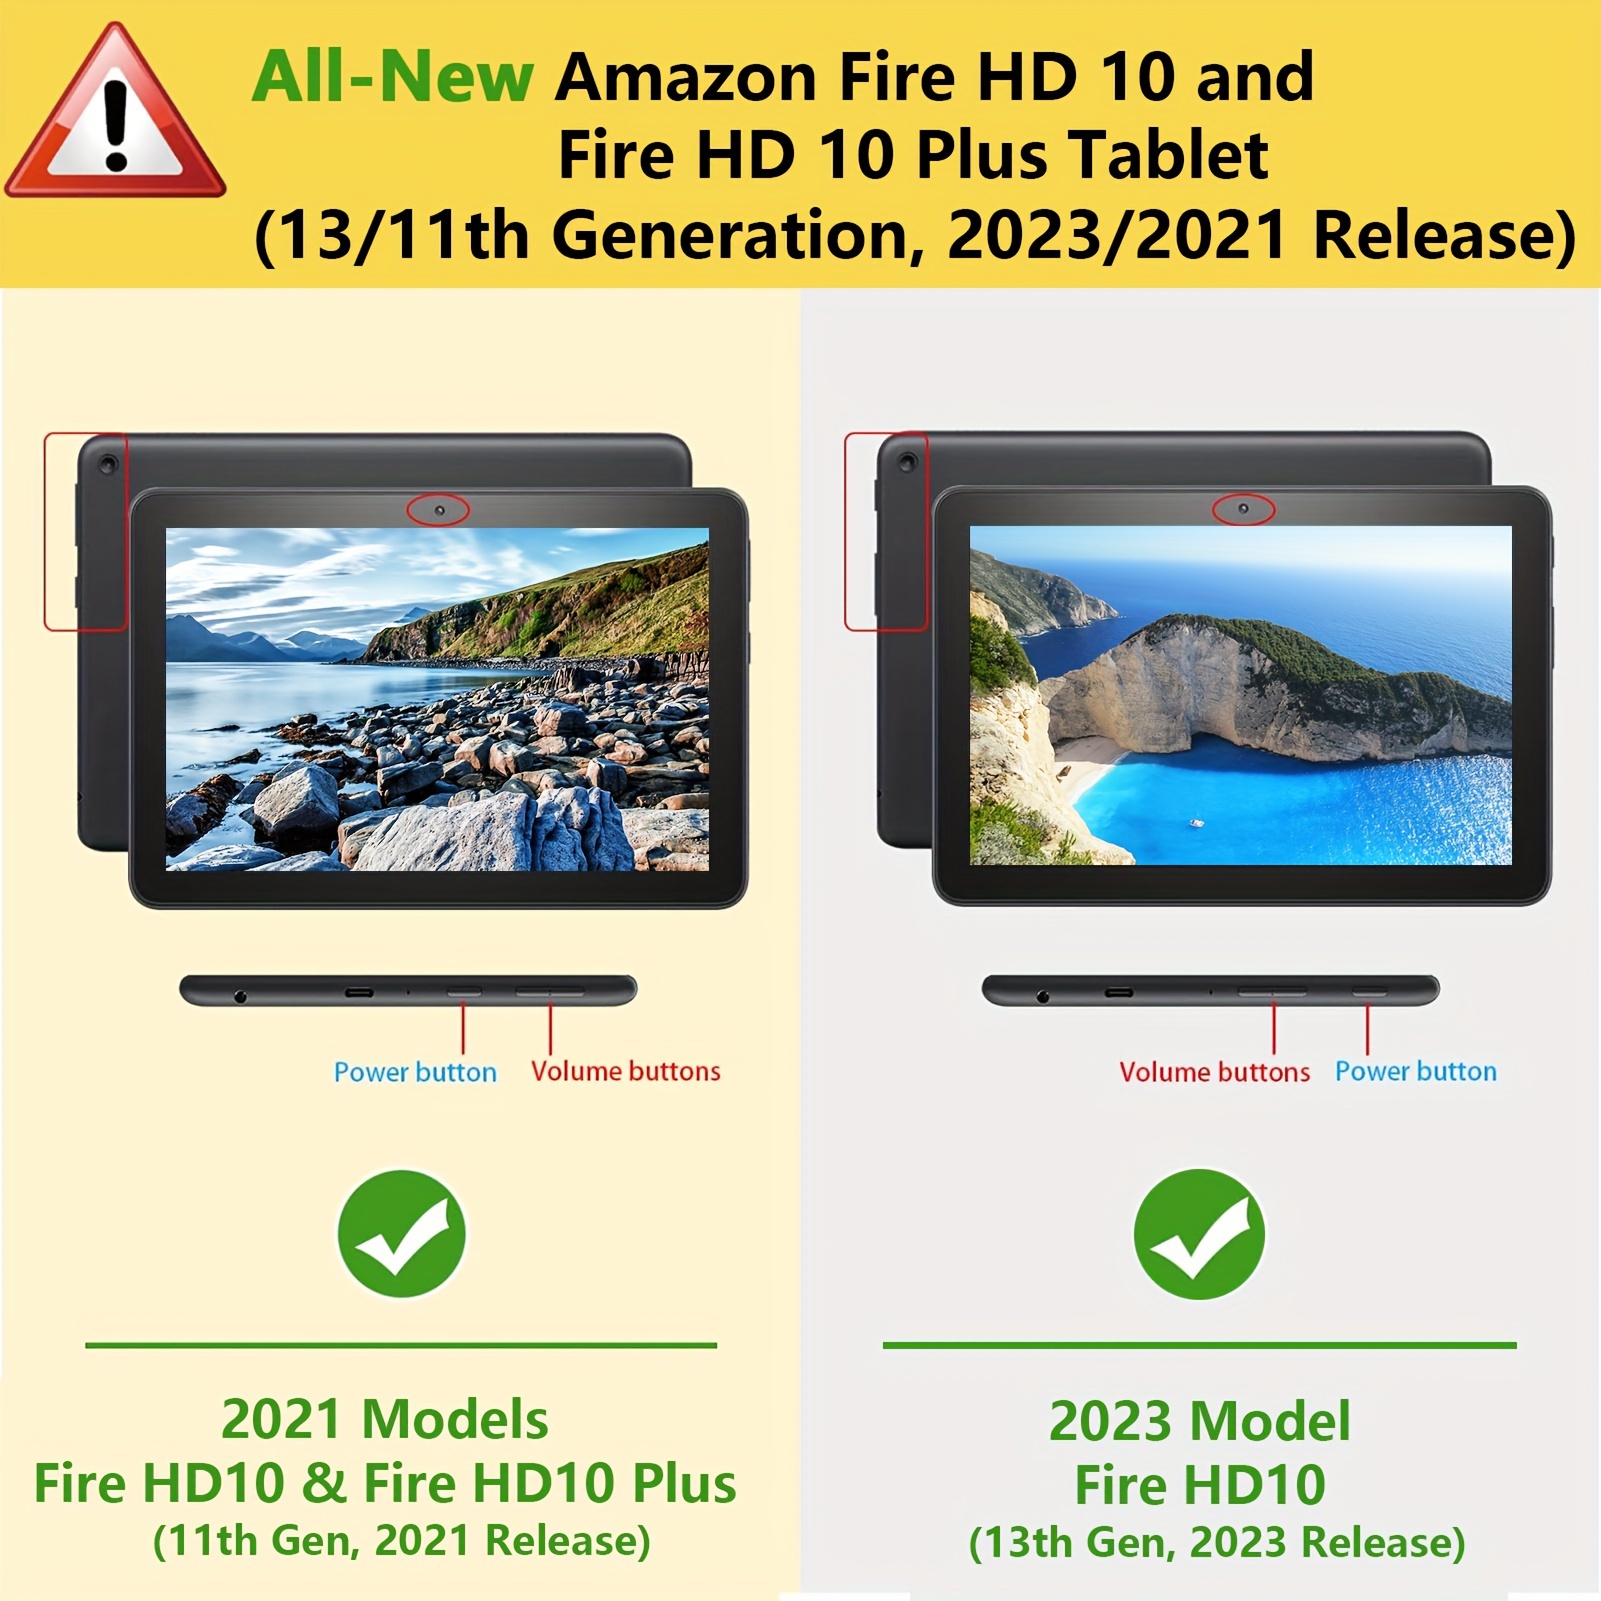 حافظة لجهاز AMZ Fire HD 10 وFire HD 10 Plus اللوحي الجديد كليًا (الجيل 13/11، إصدار 2023/2021) - غطاء واقف مناسب نحيف مع خاصية النوم/الاستيقاظ التلقائي، أسود